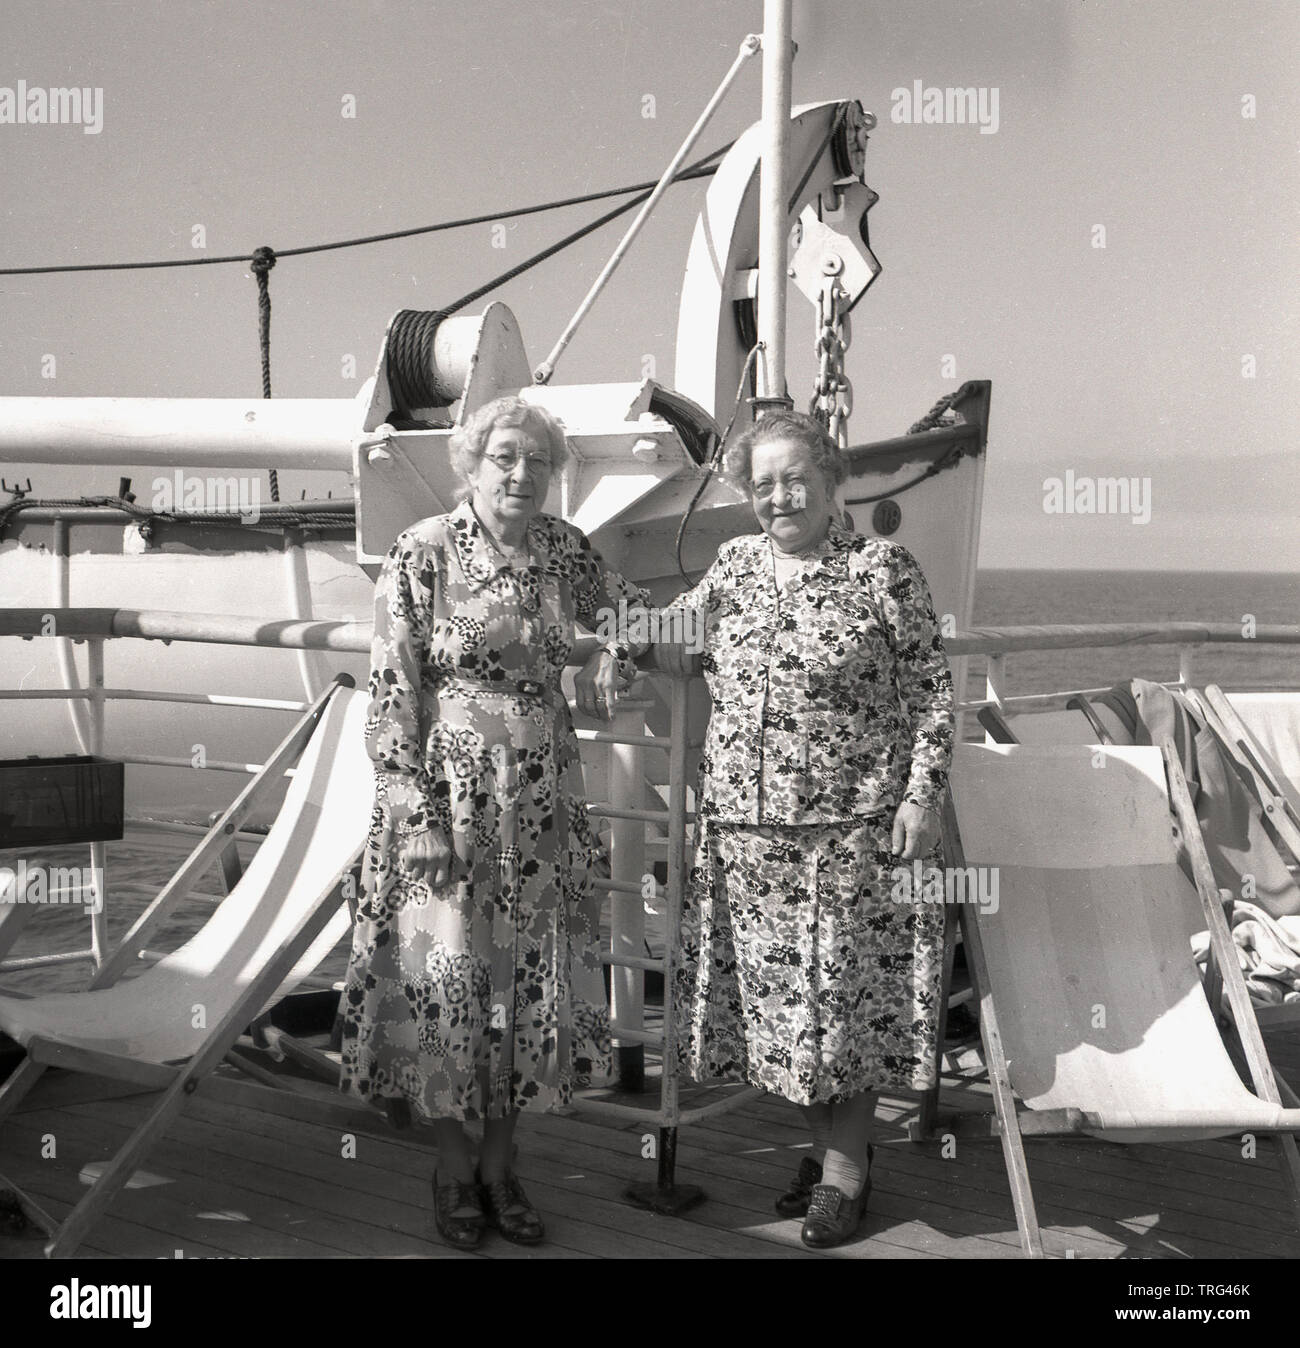 1950, historische, Kreuzfahrt auf dem Ozeanriesen in dieser Ära, zwei ältere Damen tragen Blumen gemusterte Kleider stehen draussen auf dem Deck des P&O Chusan Kreuzfahrtschiff. Stockfoto